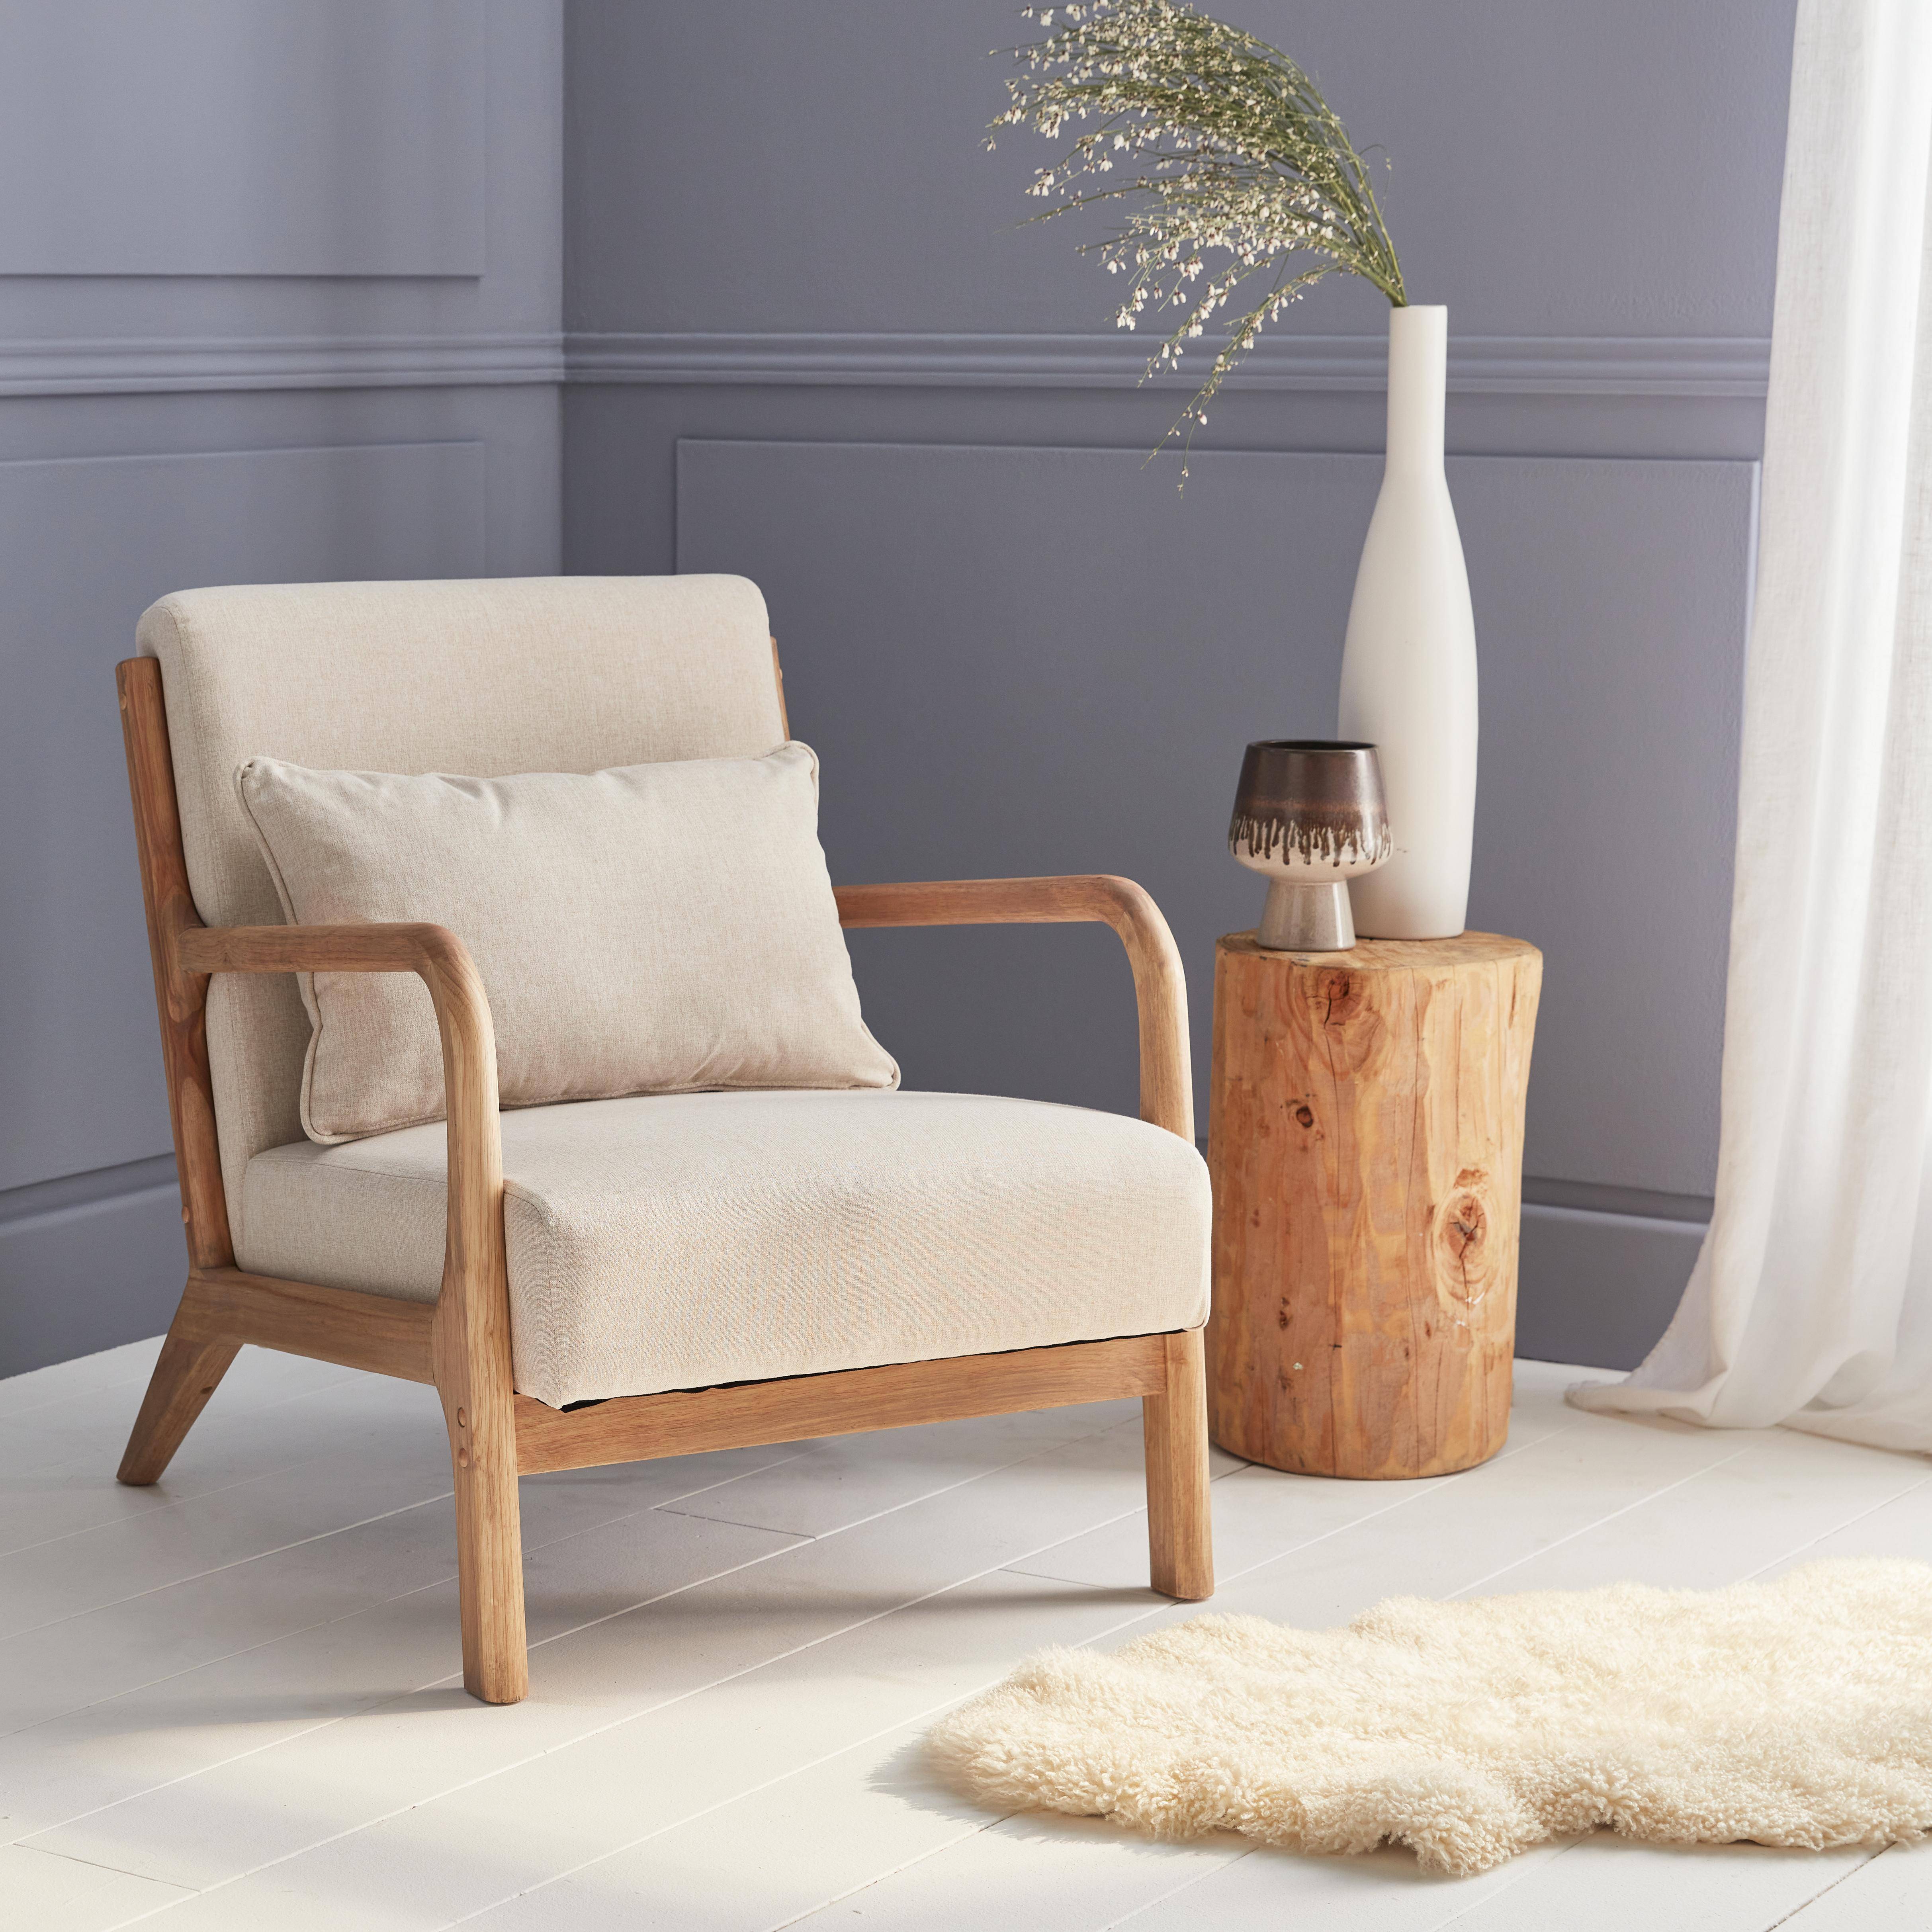 Poltrona de design em madeira e tecido, 1 assento reto fixo, pernas em bússola escandinavas, estrutura em madeira maciça, assento bege confortável Photo1